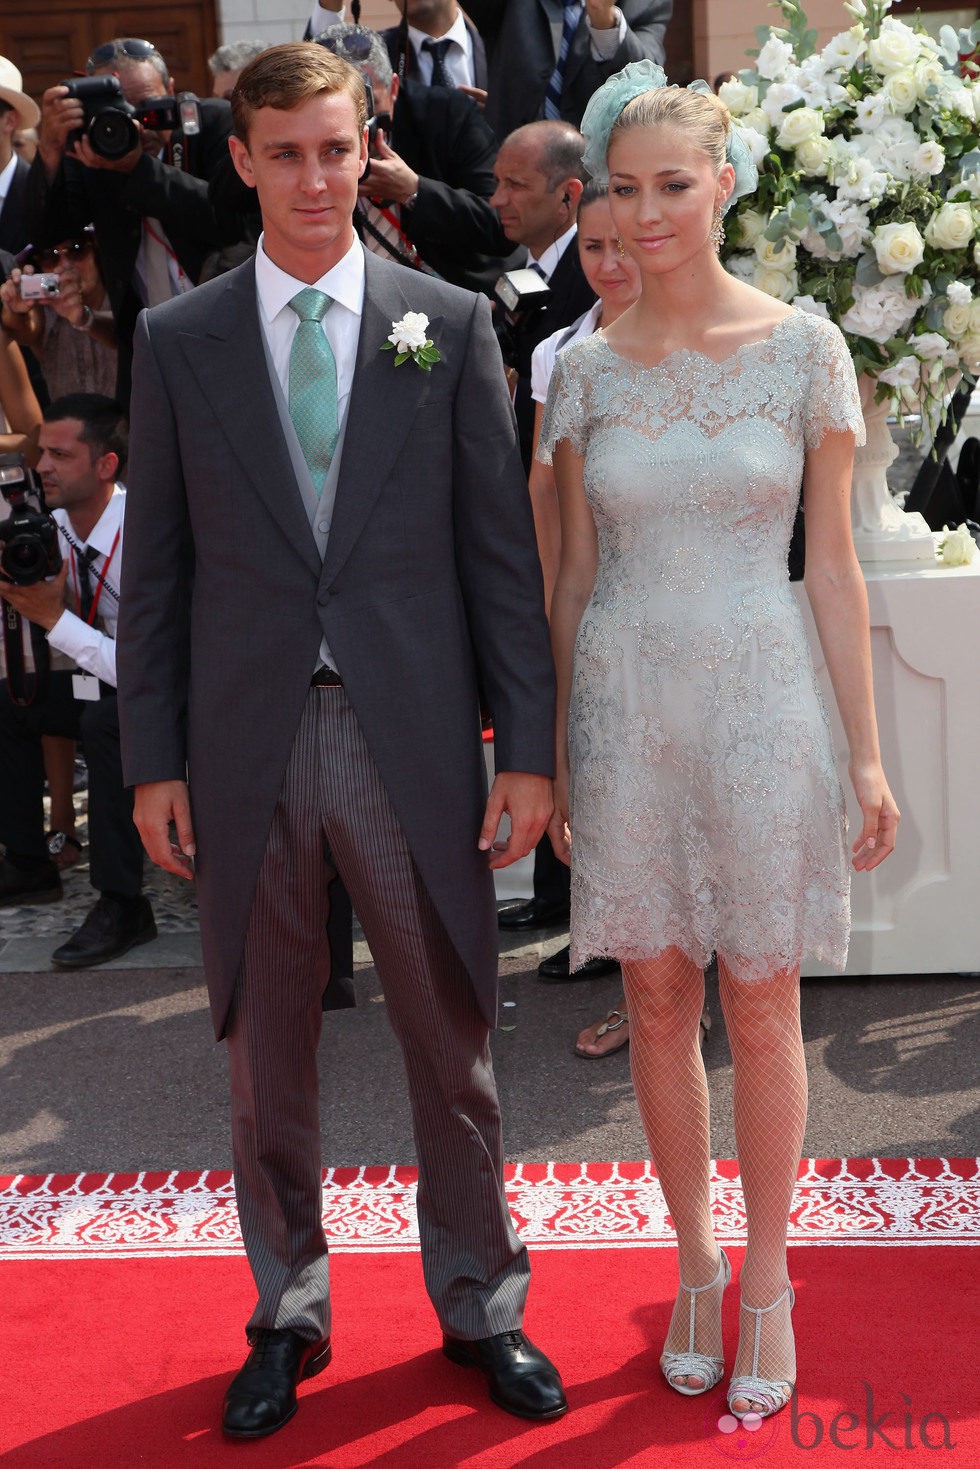 Pierre Casiraghi y Beatriz Borromeo en la boda de Alberto de Mónaco